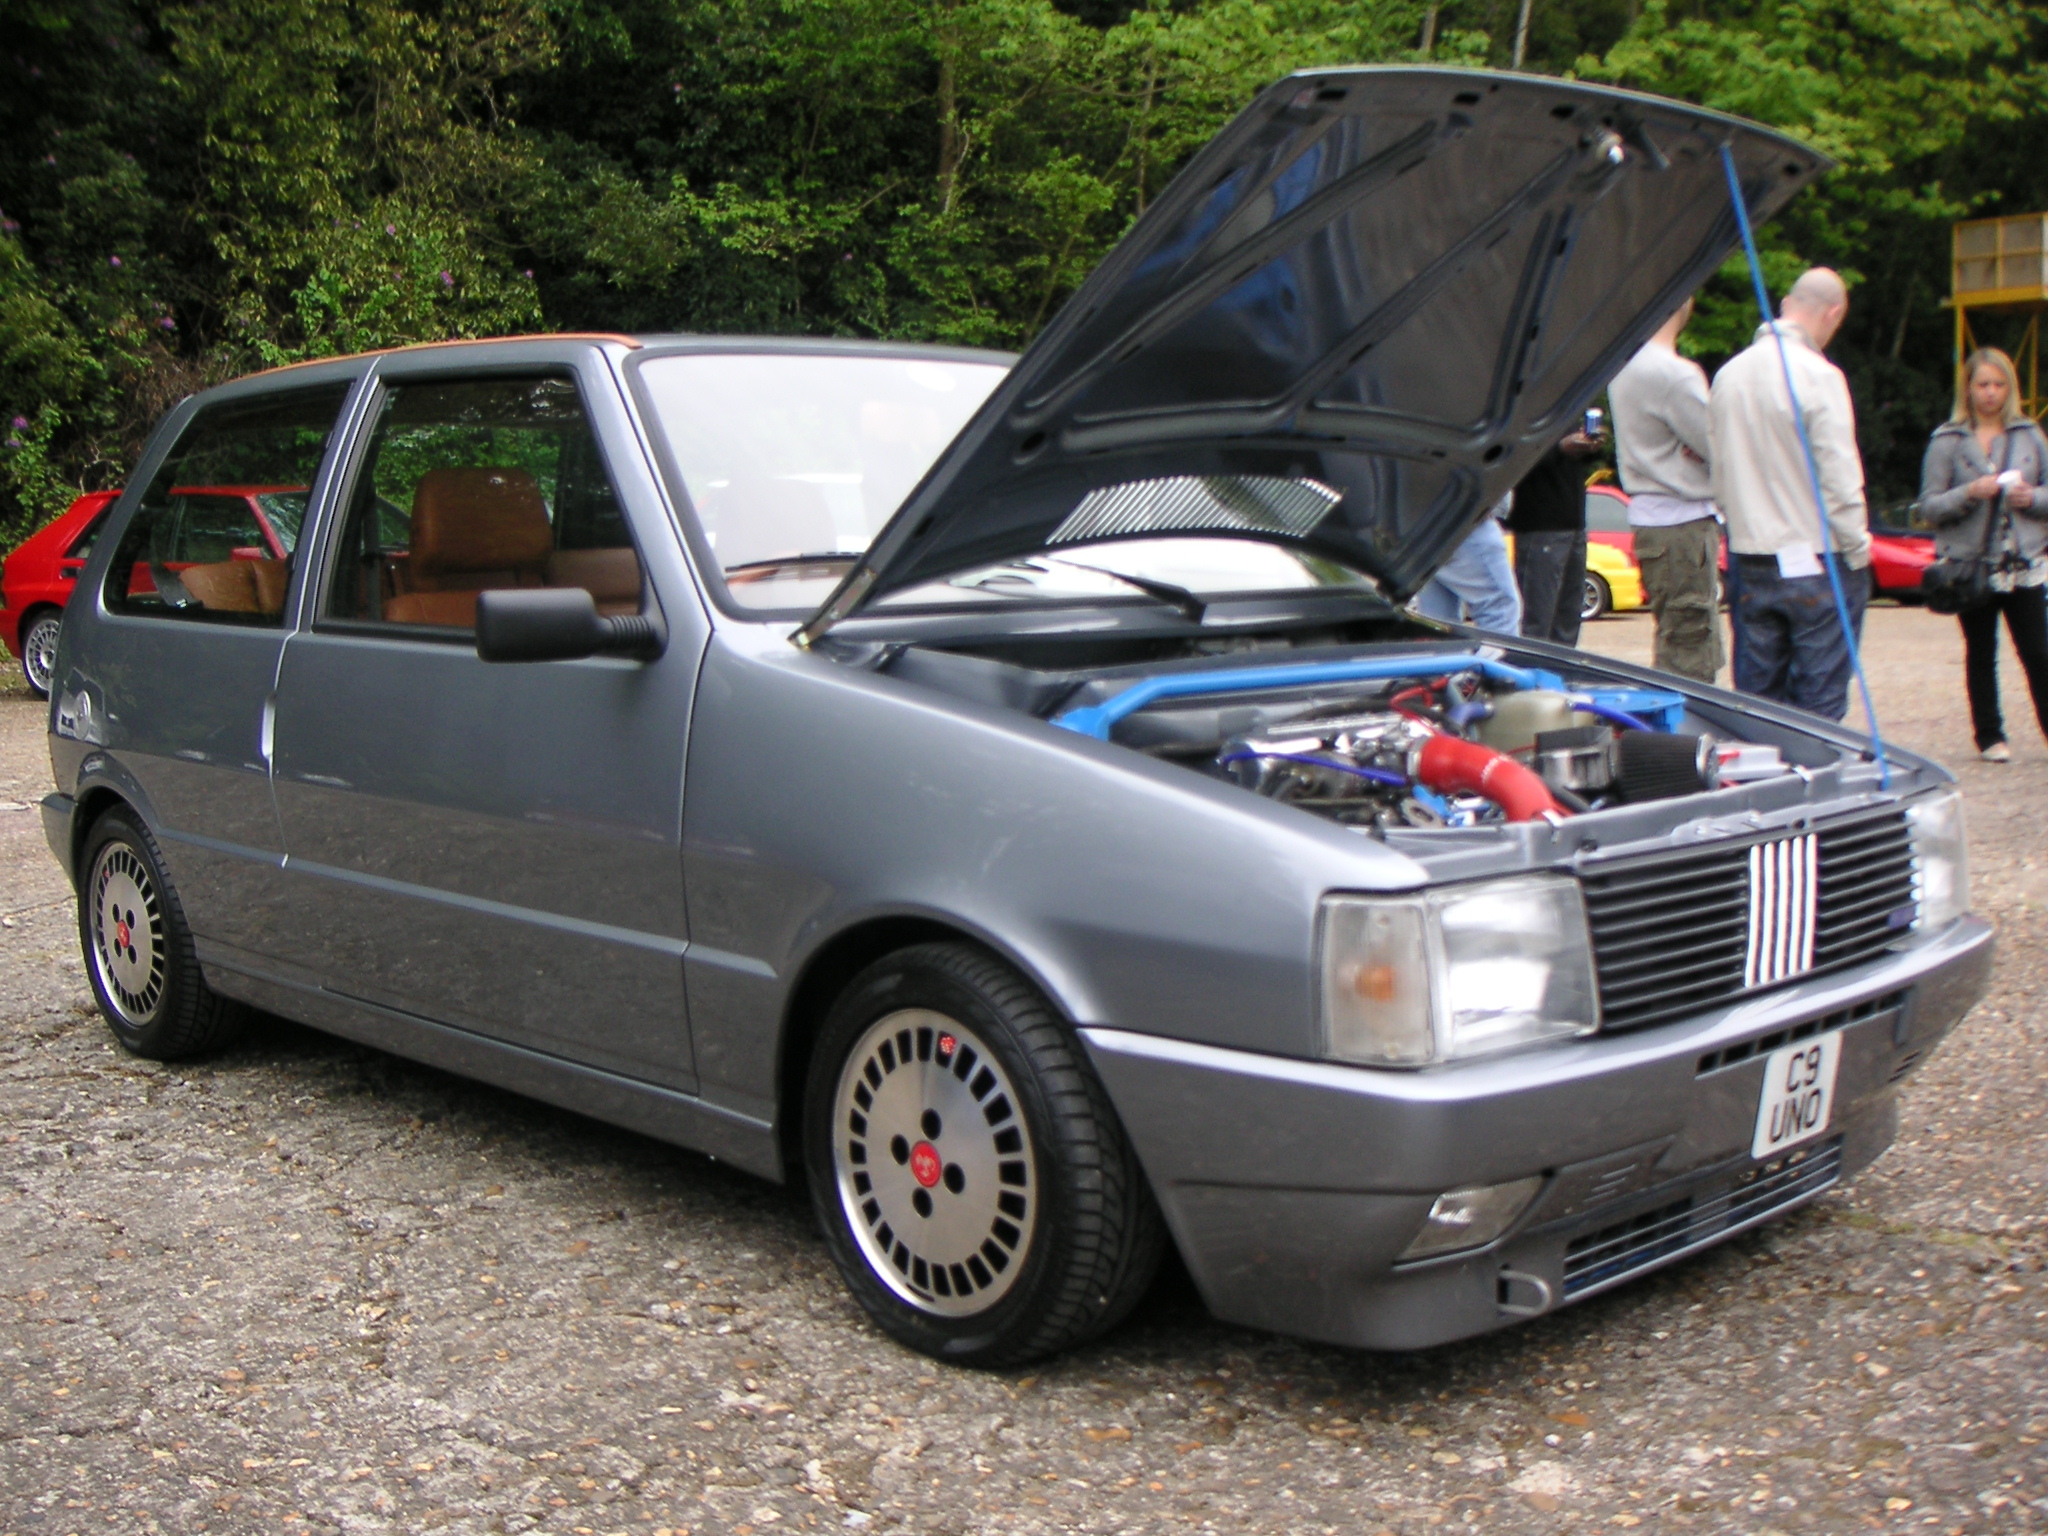 1988 MK1 Fiat Uno Turbo ie 1990 MK1 Fiat Uno Turbo ie